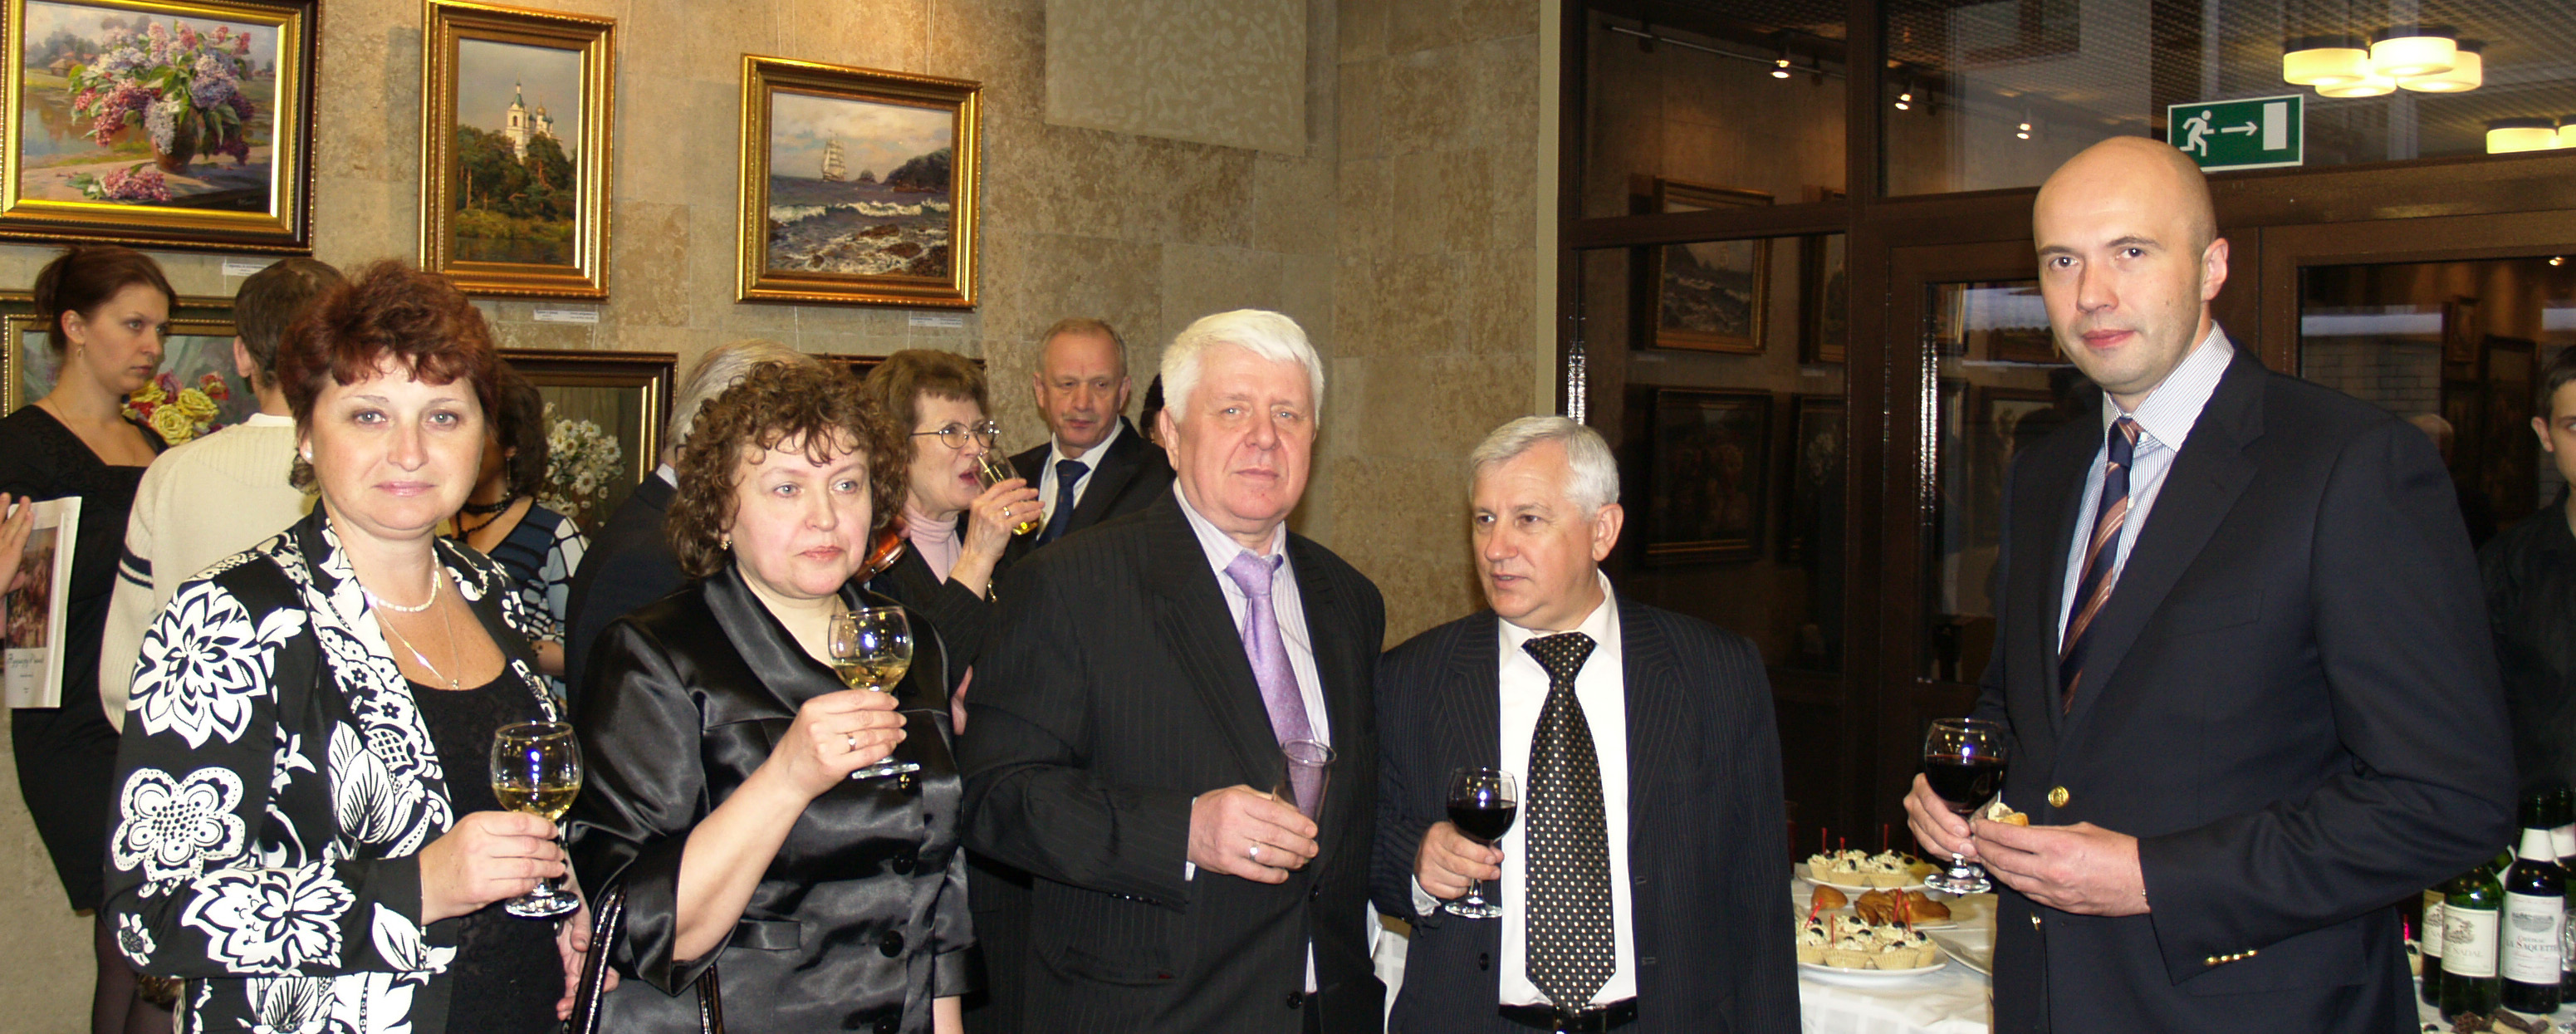 Открытие персональной выставки Эдуарда Панова в ГК «Росатом». Москва, февраль 2010 г.